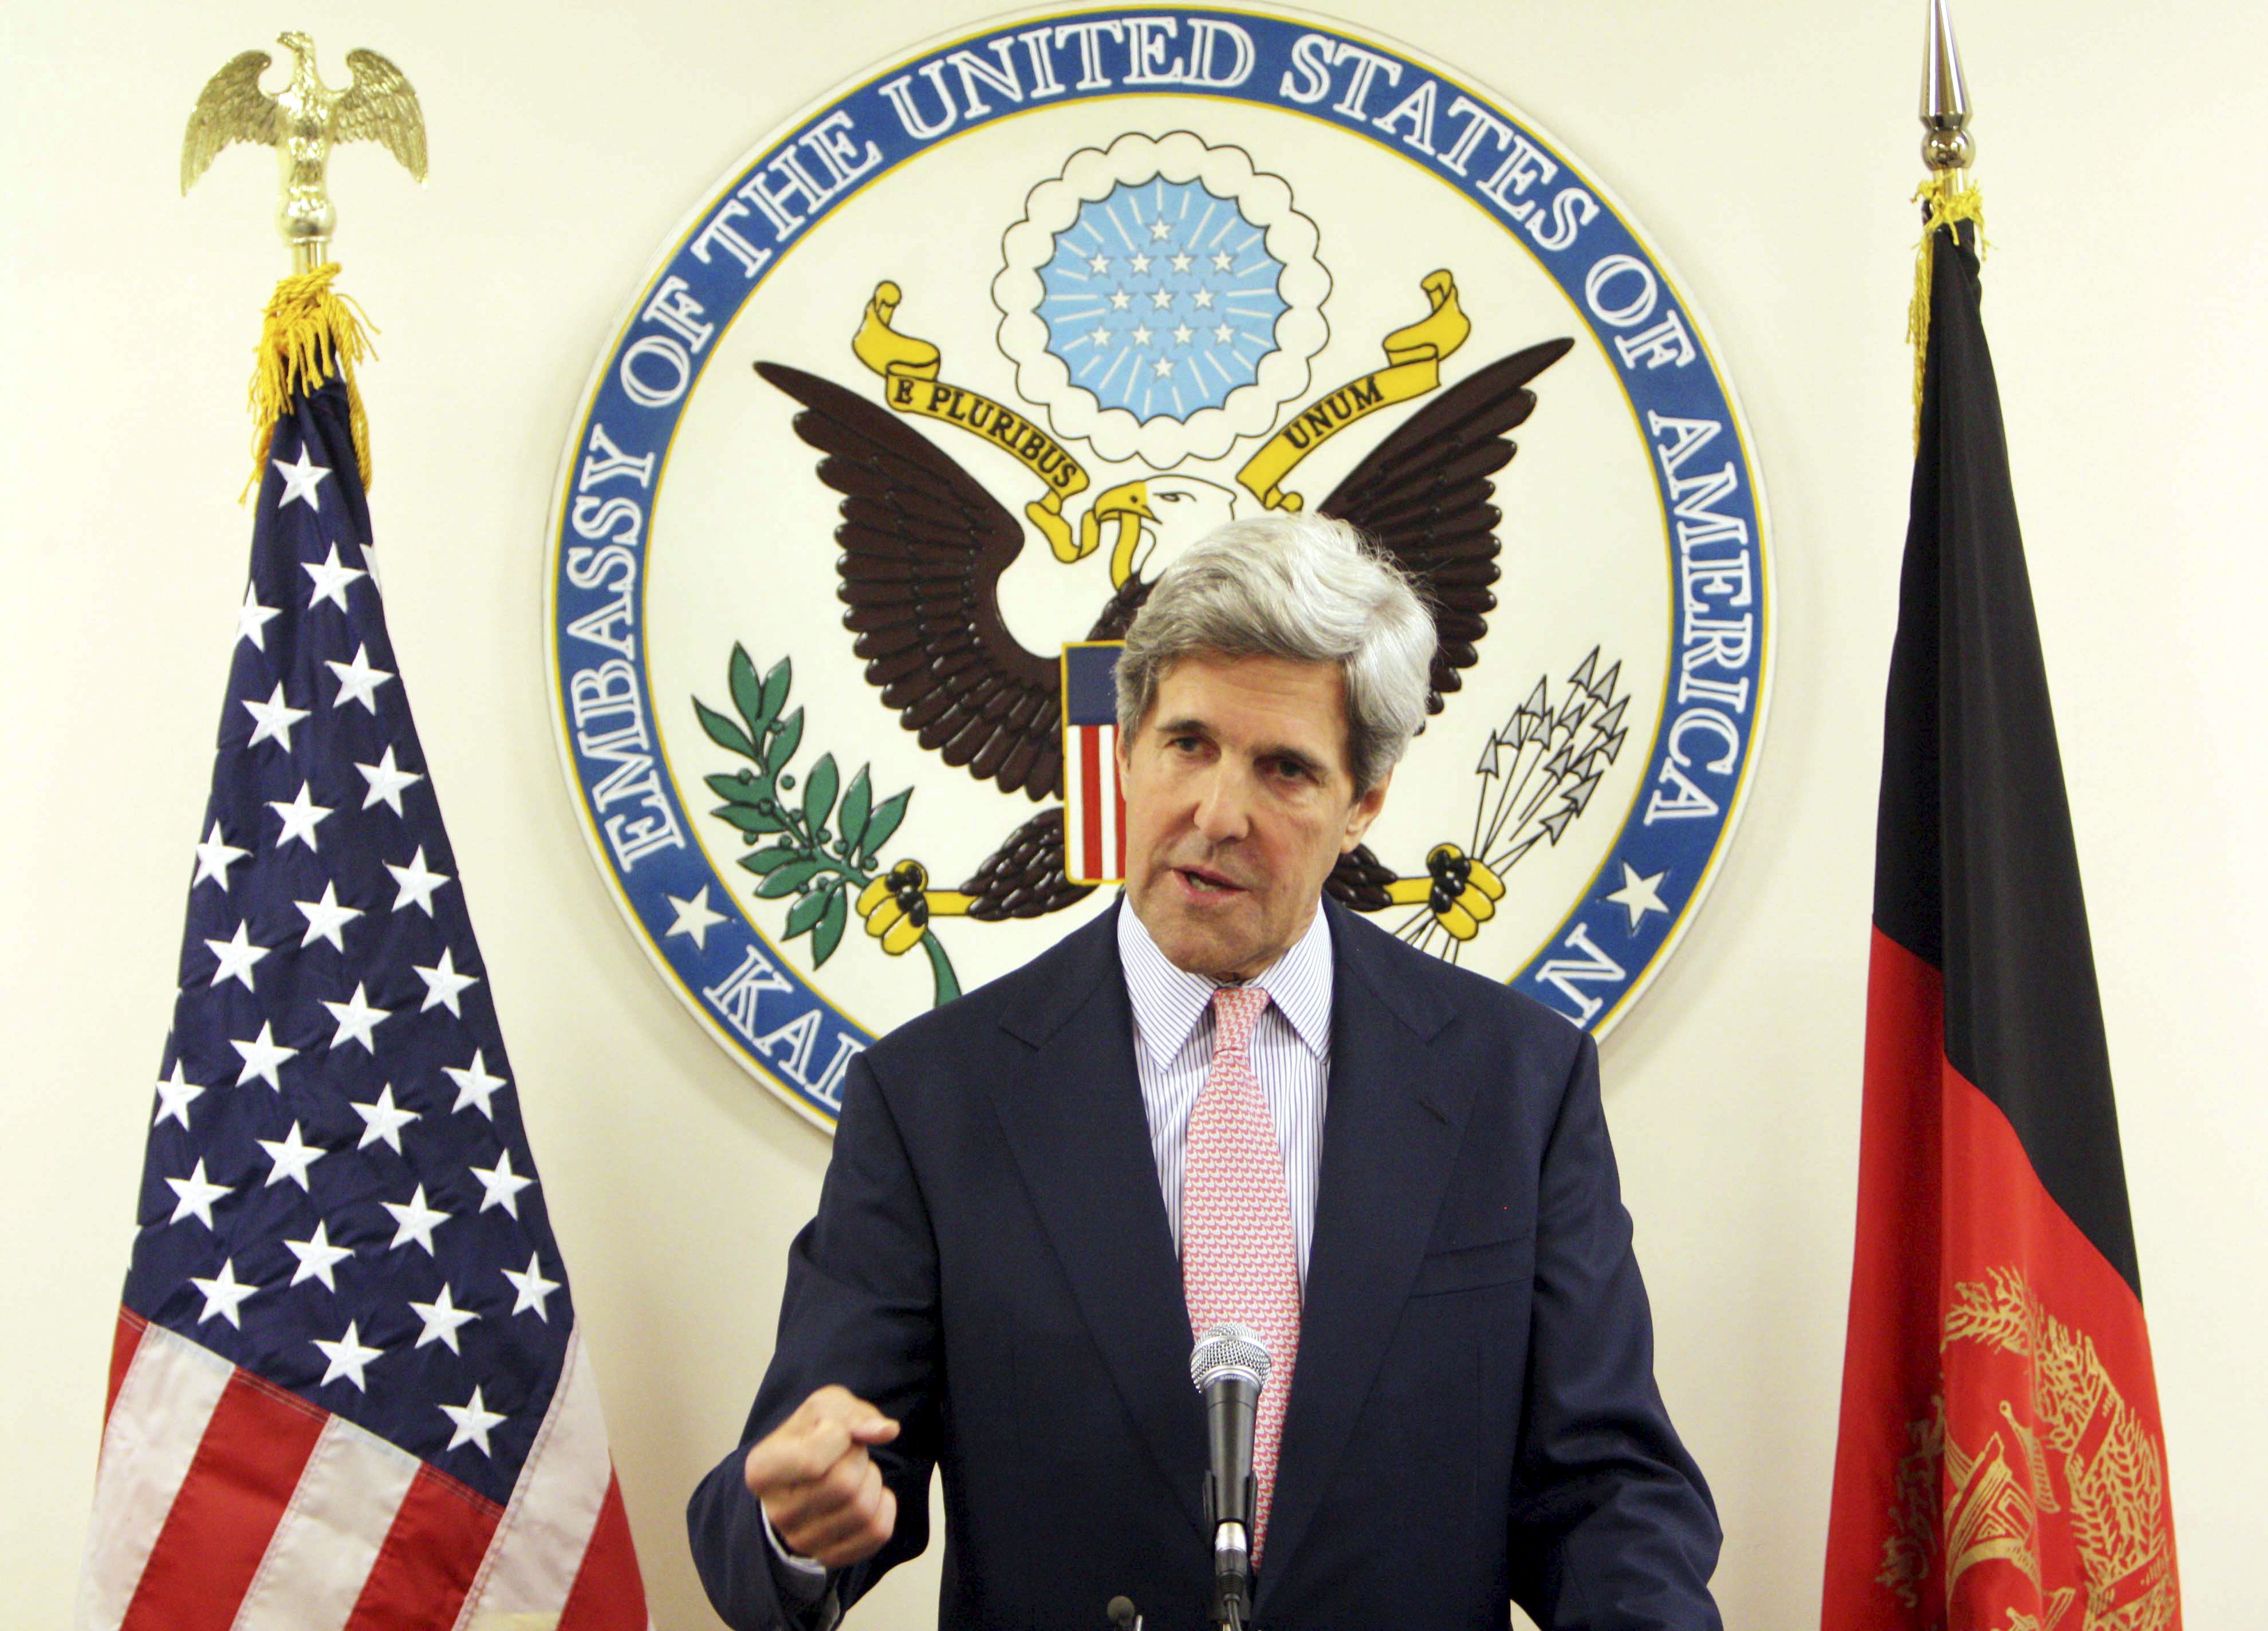 Kerry reconoce que el espionaje estadounidense ha ido demasiado lejos